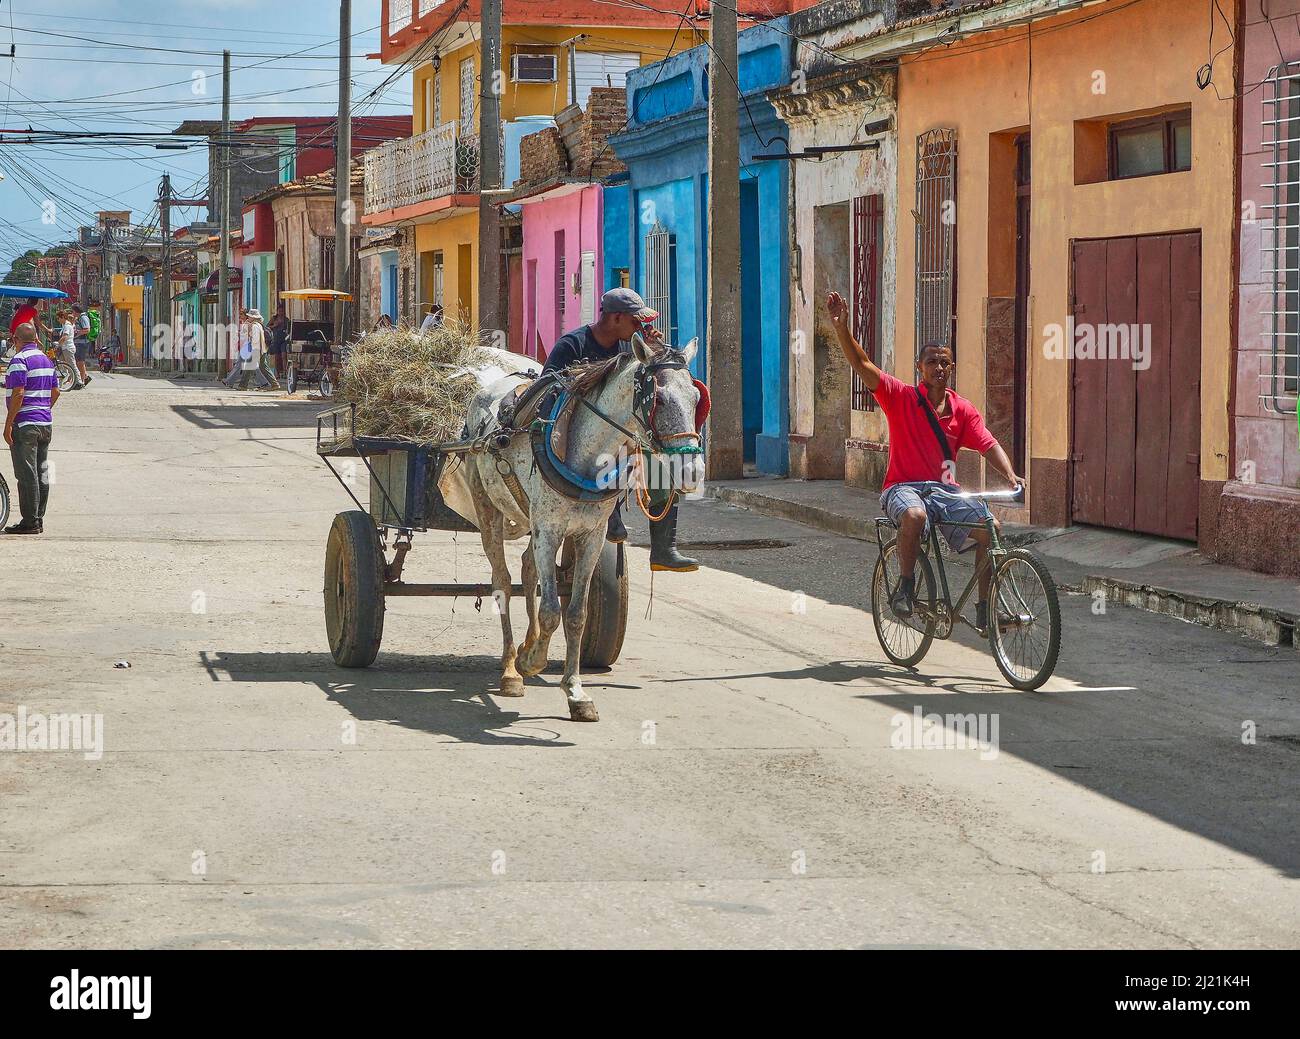 El biker saluda a su frito con un carruaje tirado por caballos, Cuba, Sancti Spiritus, Trinidad Foto de stock